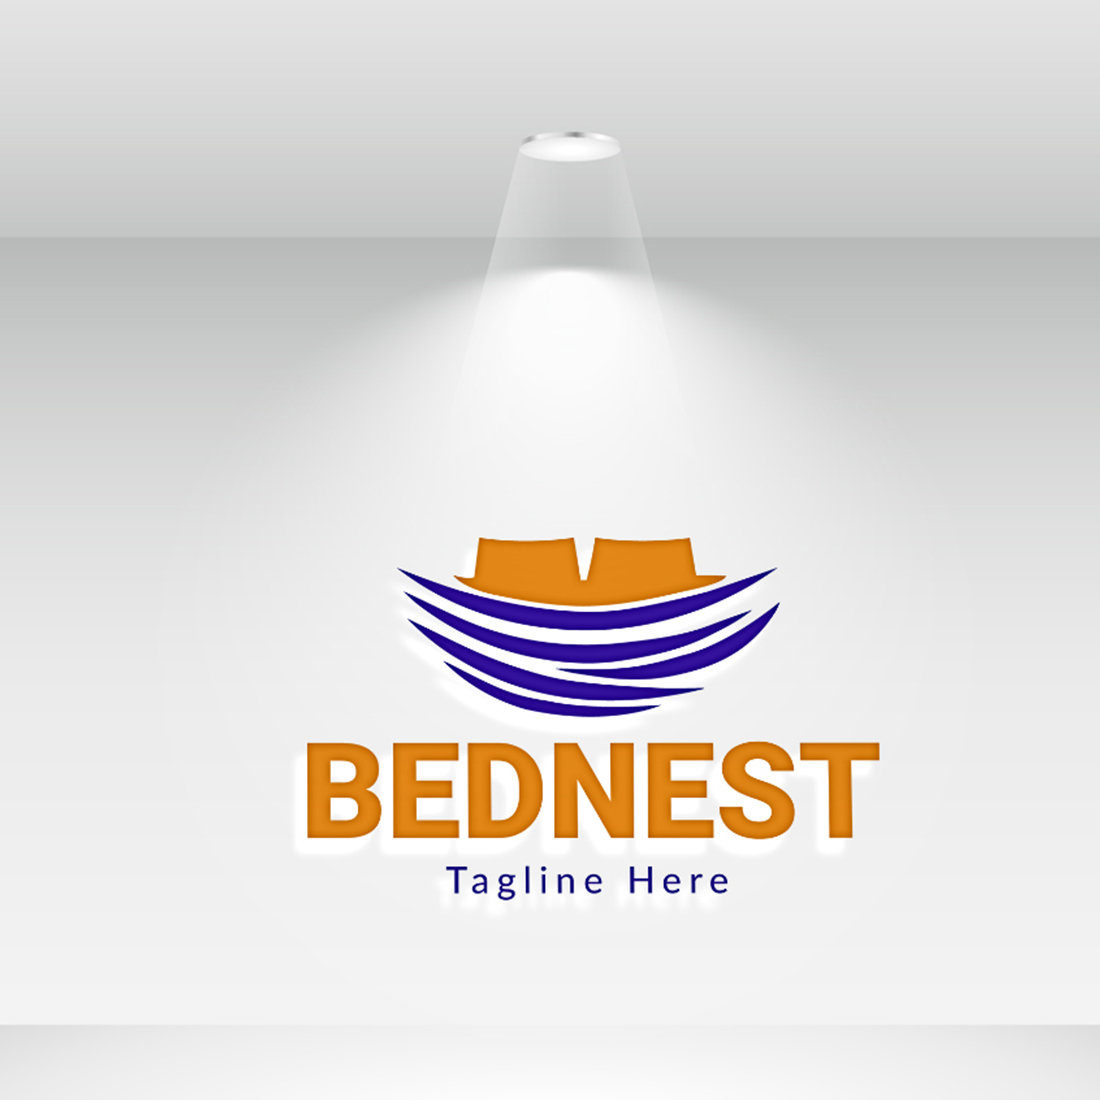 Logo for a bednest bed line.